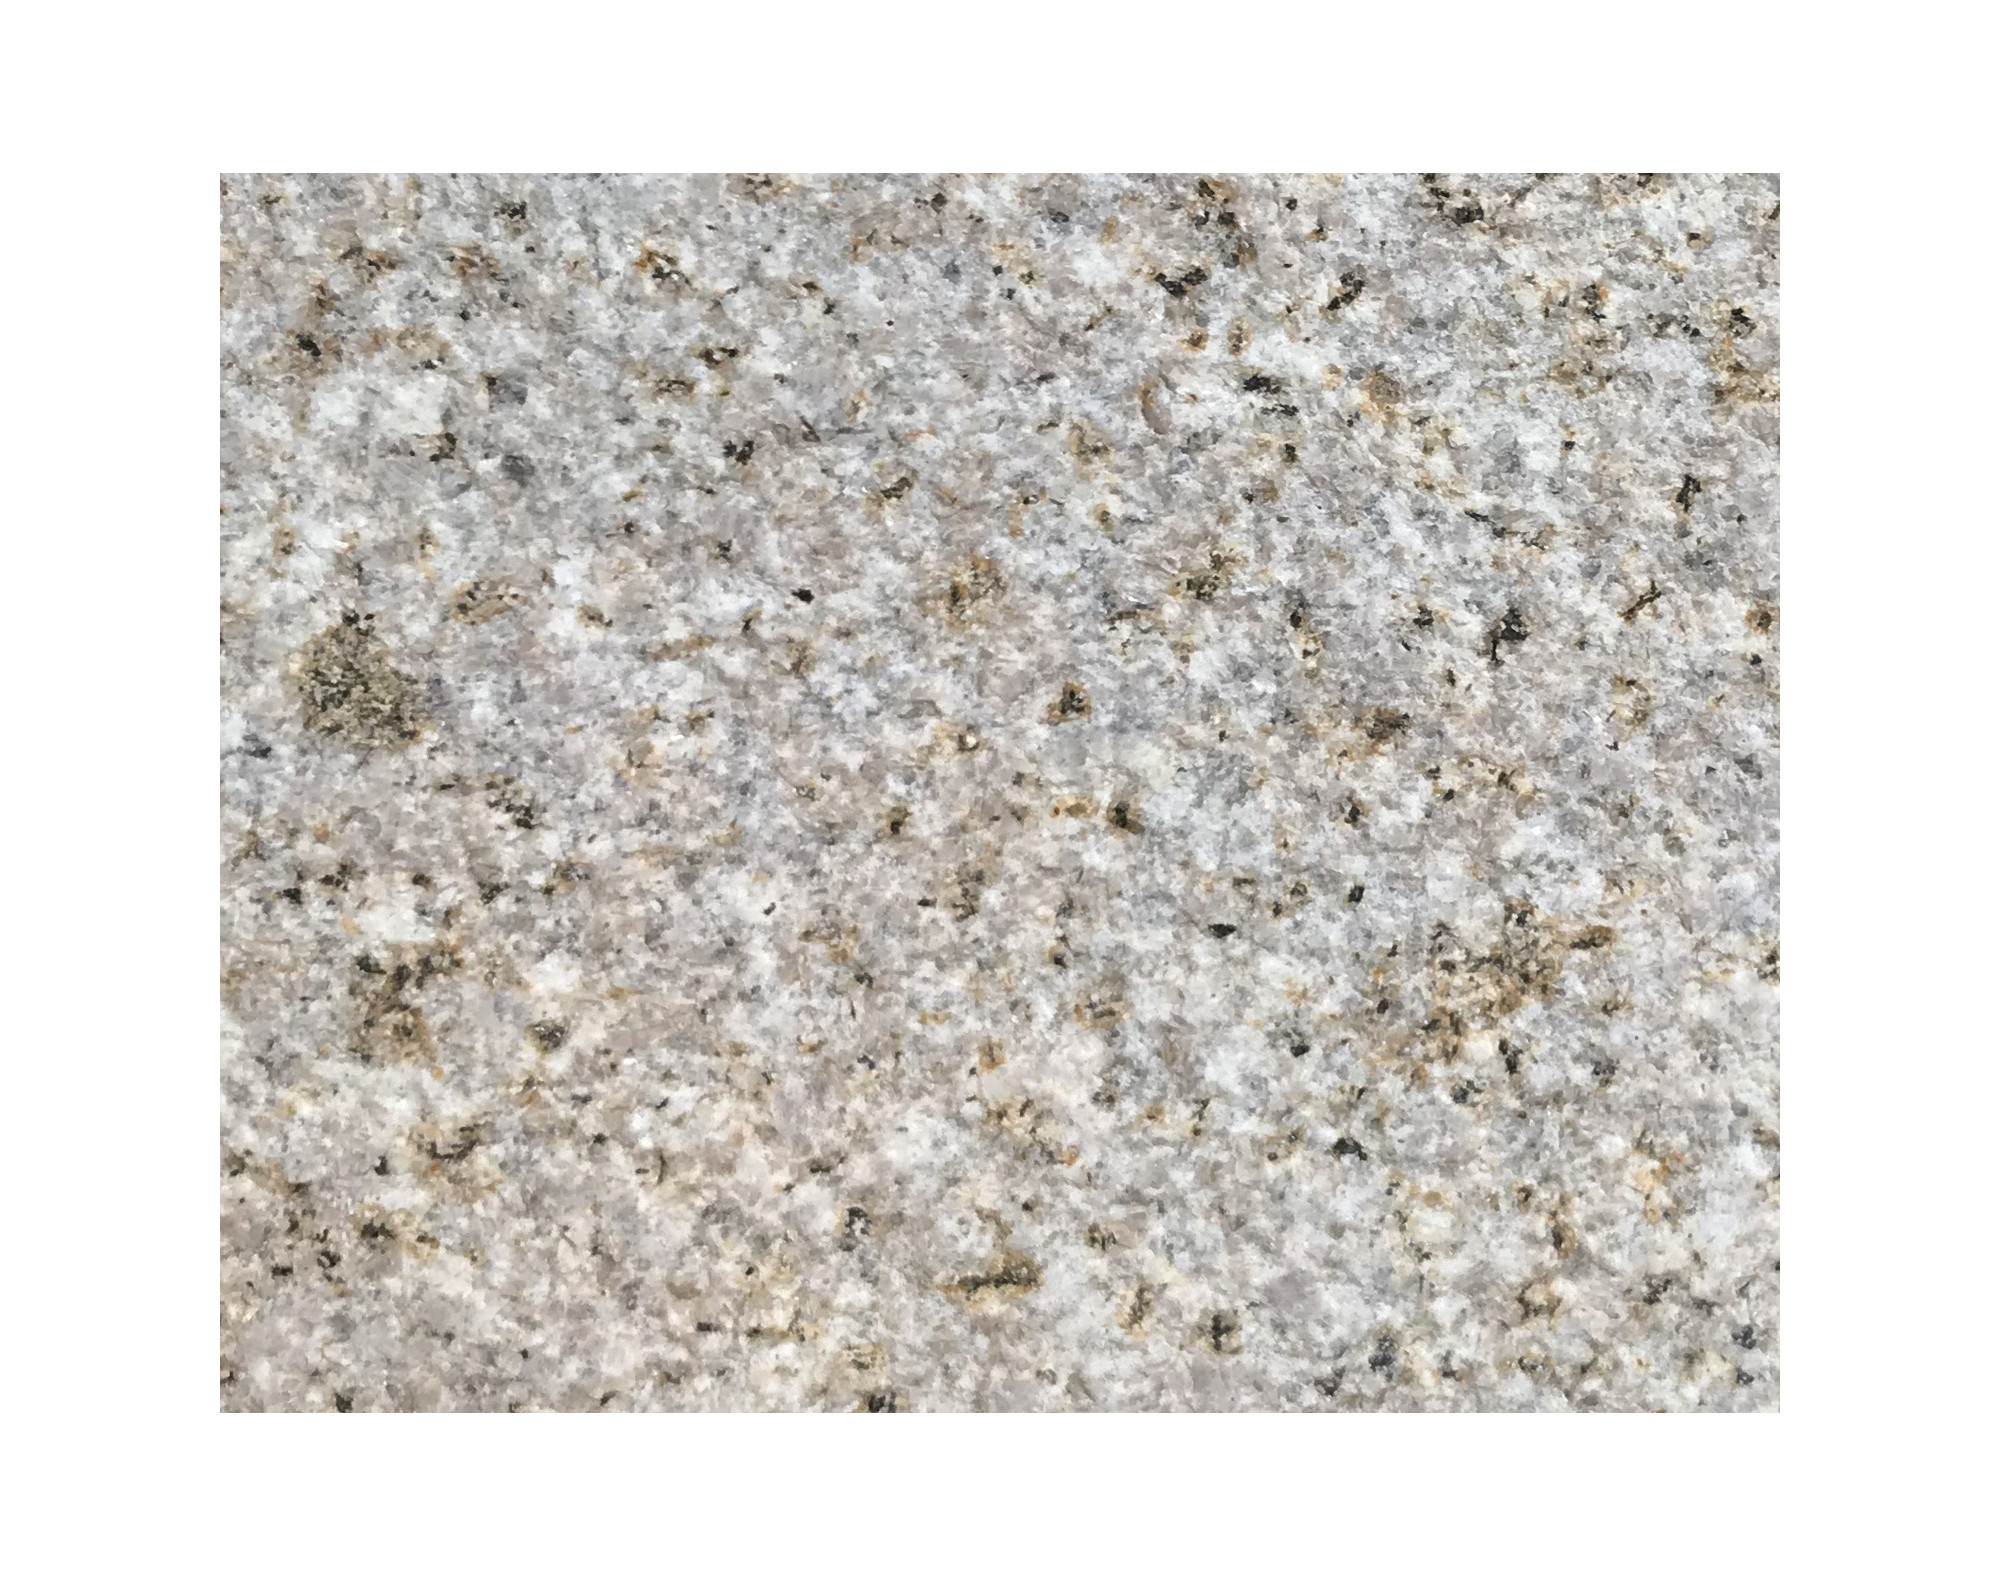 Harmo roc napoliset, natura-serie, ovaal d: 3,50mx7,50m, zachtzand, graniet